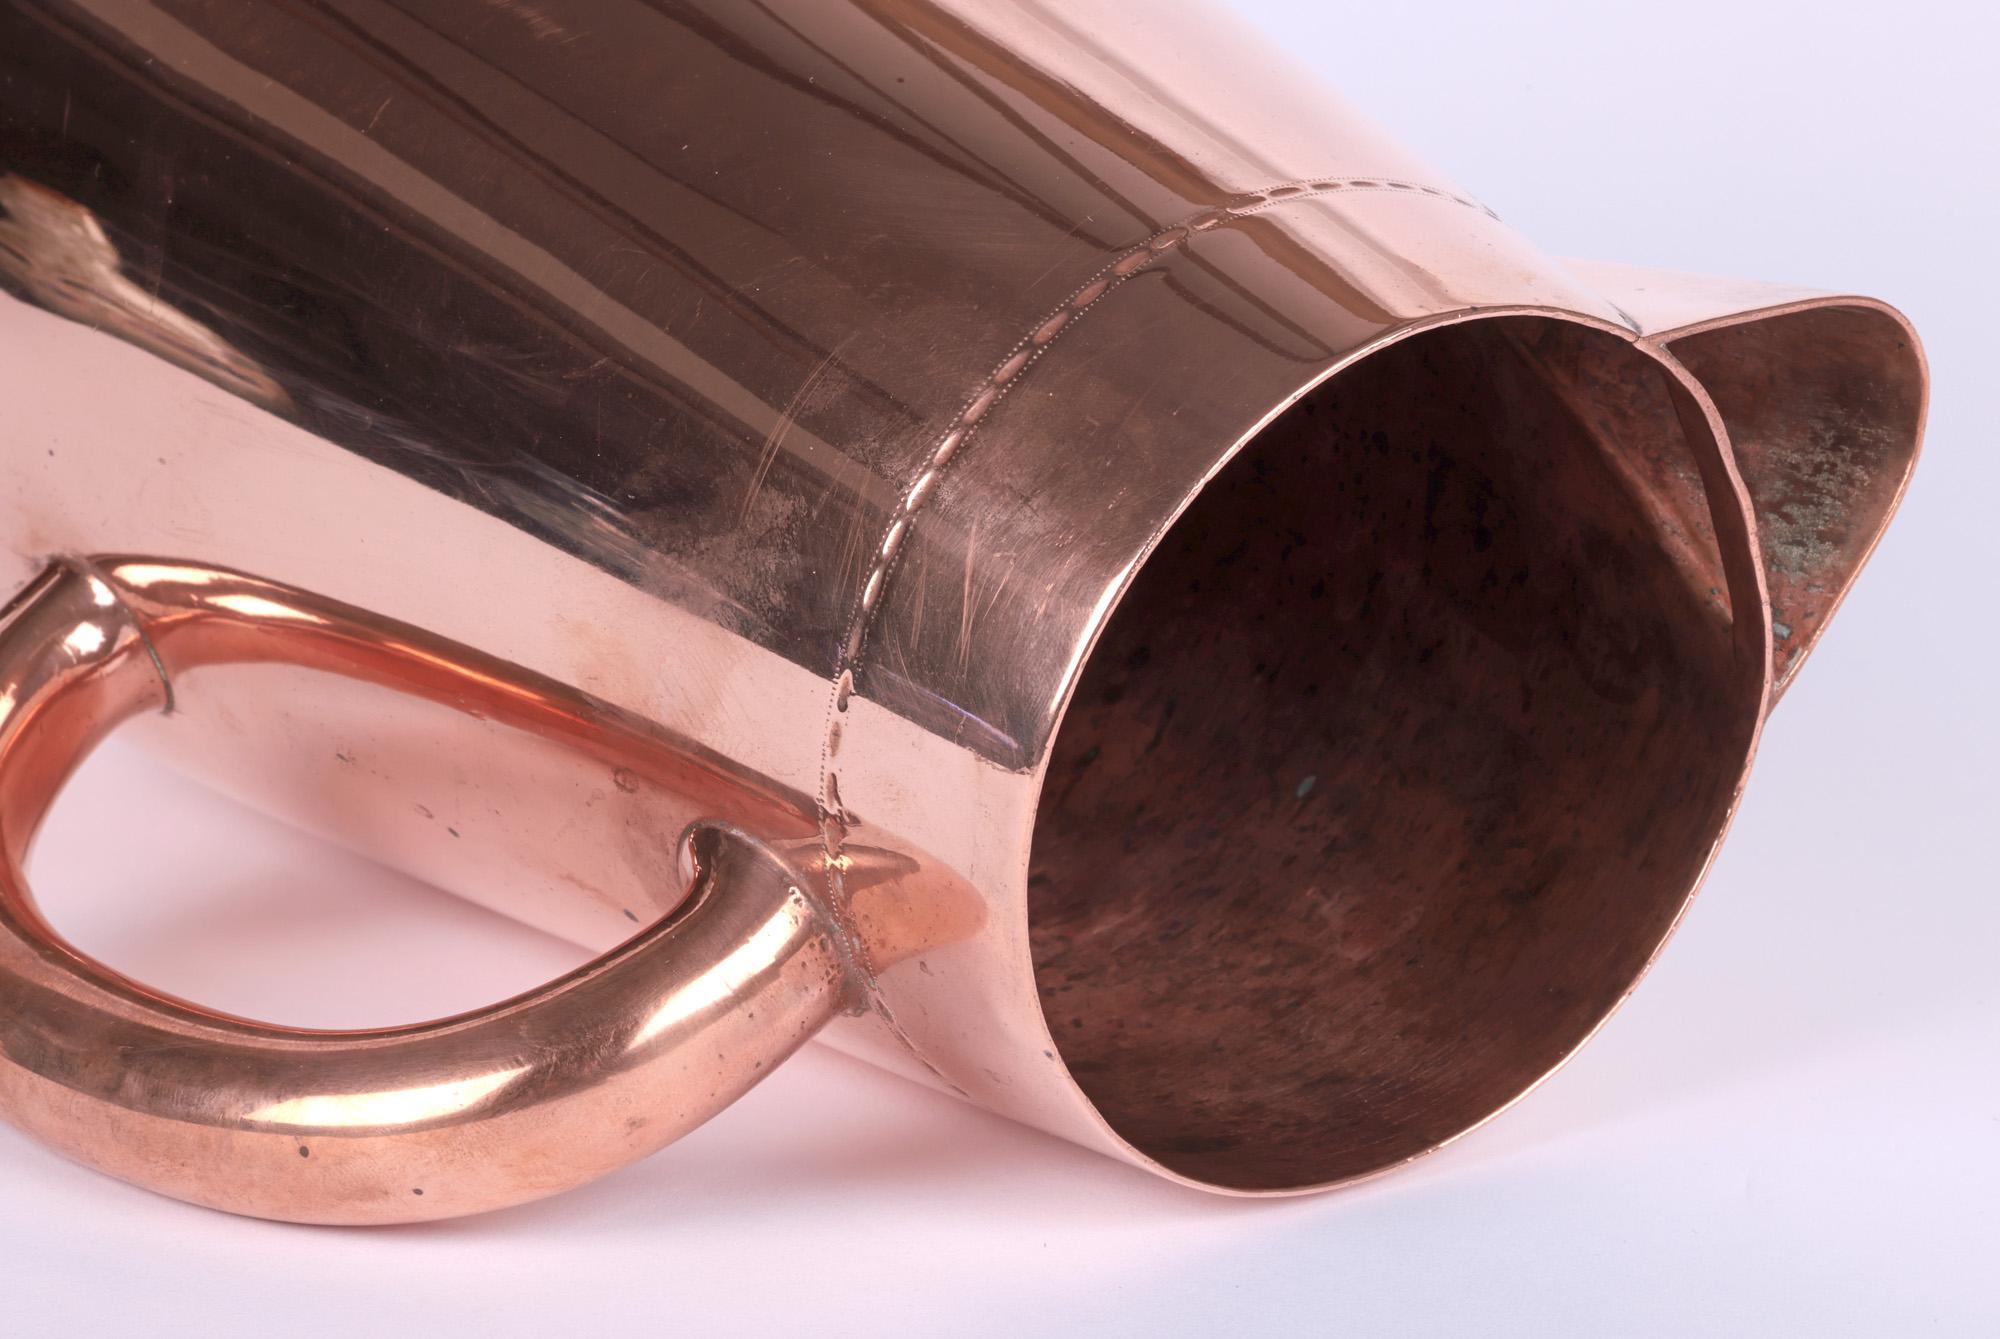 Brass Christopher Dresser Richard Hodd & Sons Large Copper Jug For Sale